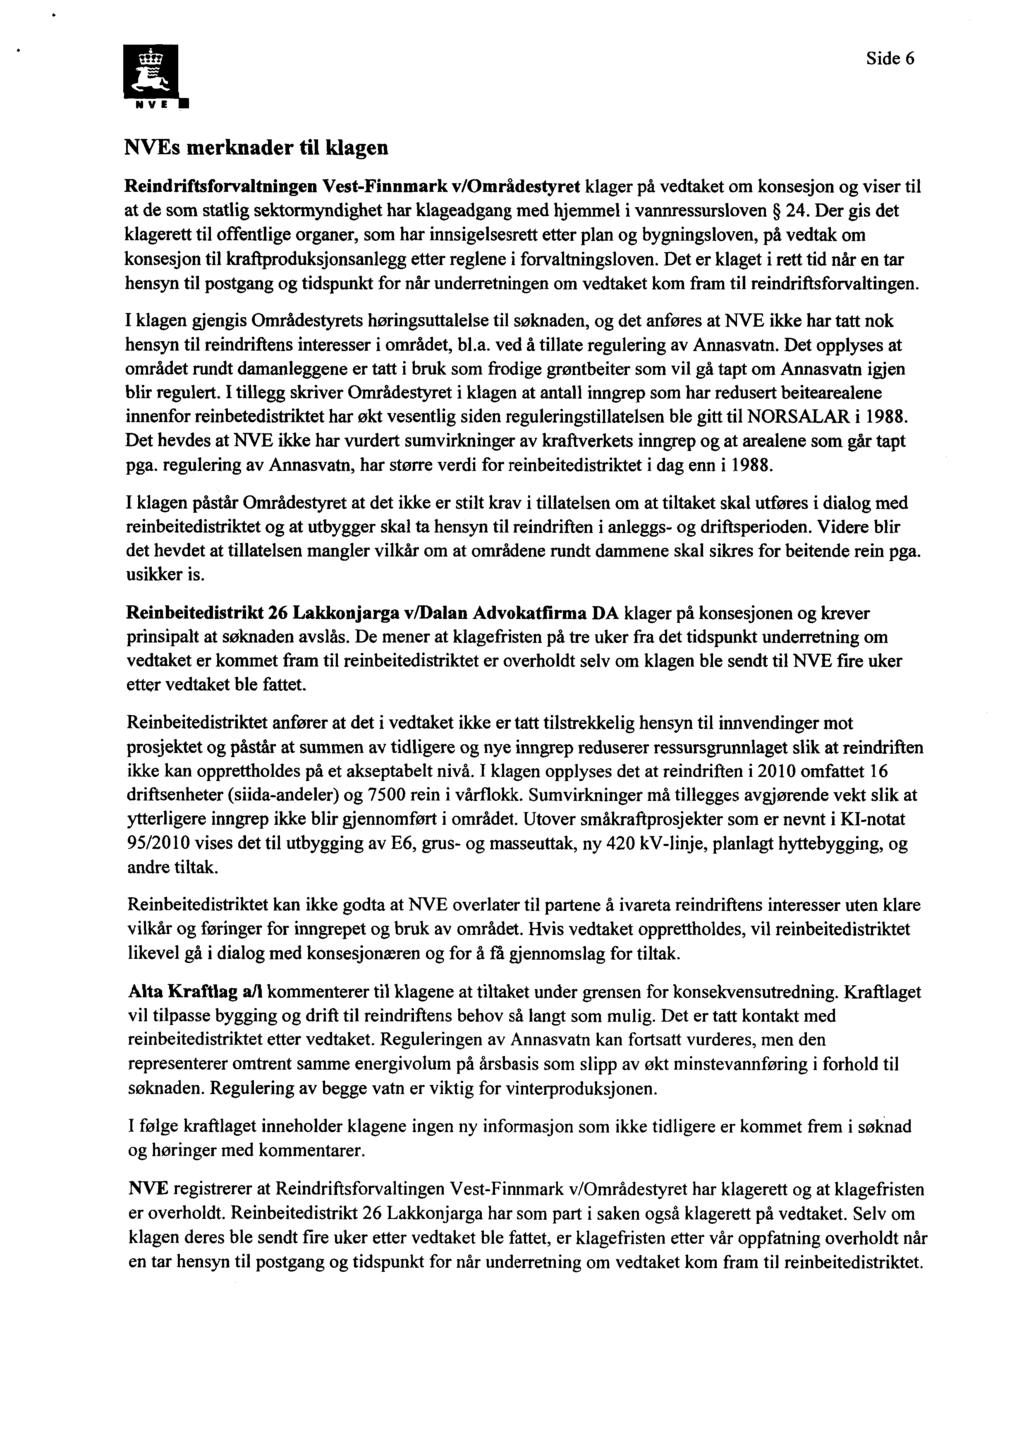 Side 6 NVE NVEs merknader til klagen Reindriftsforvaltningen Vest-Finnmark v/områdestyret klager på vedtaket om konsesjon og viser til at de som statlig sektormyndighet har klageadgang med hjemmel i